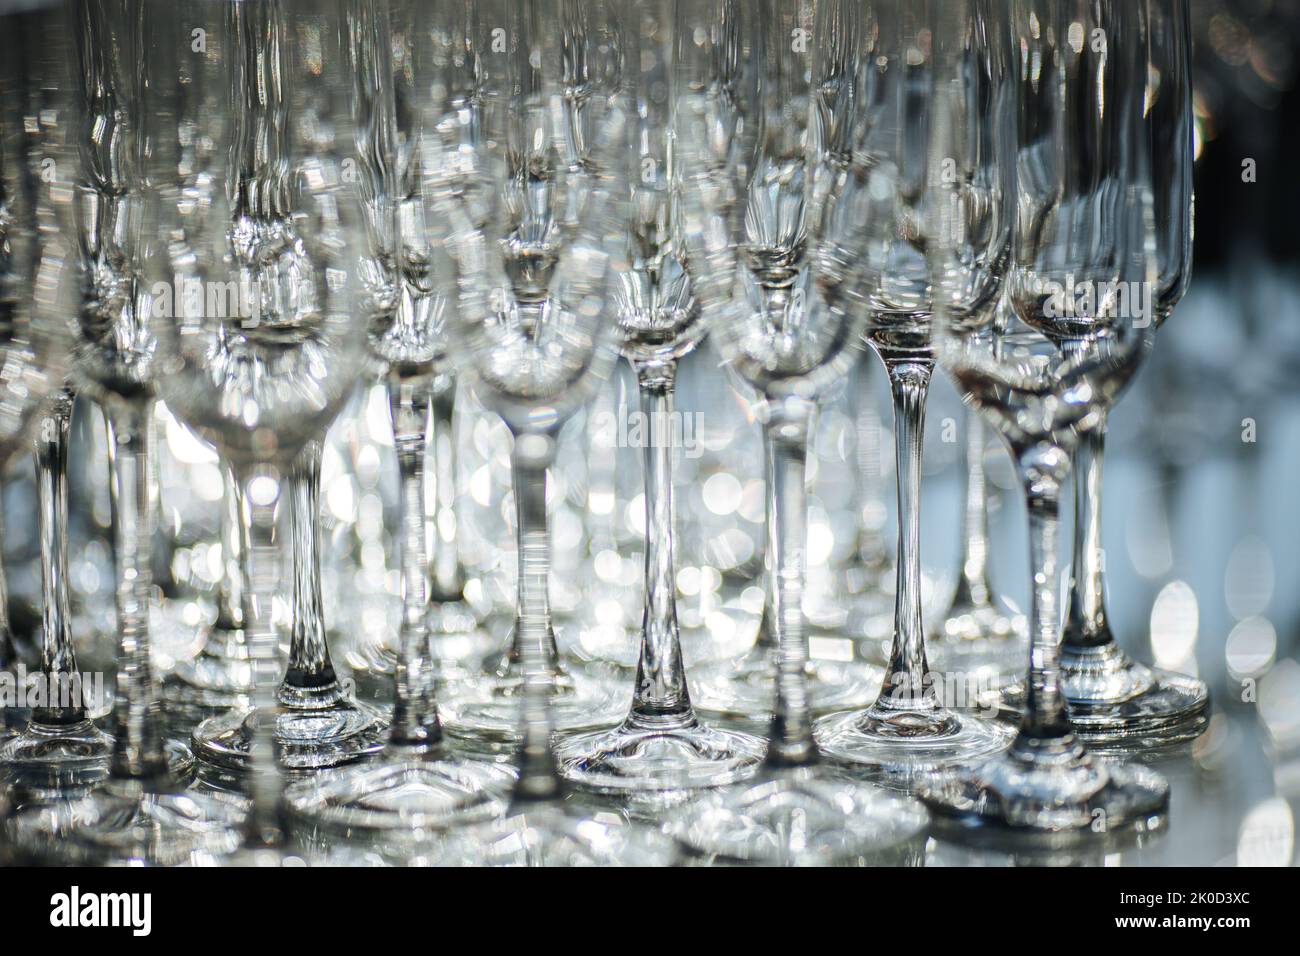 Gruppe leerer und transparenter Sektgläser in einem Restaurant. Reinigen Sie die Gläser auf einem Tisch, der vom Barkeeper für Champagner zubereitet wurde. Catering für die Veranstaltungsvorbereitung, leere Gläser für Getränke. Stockfoto